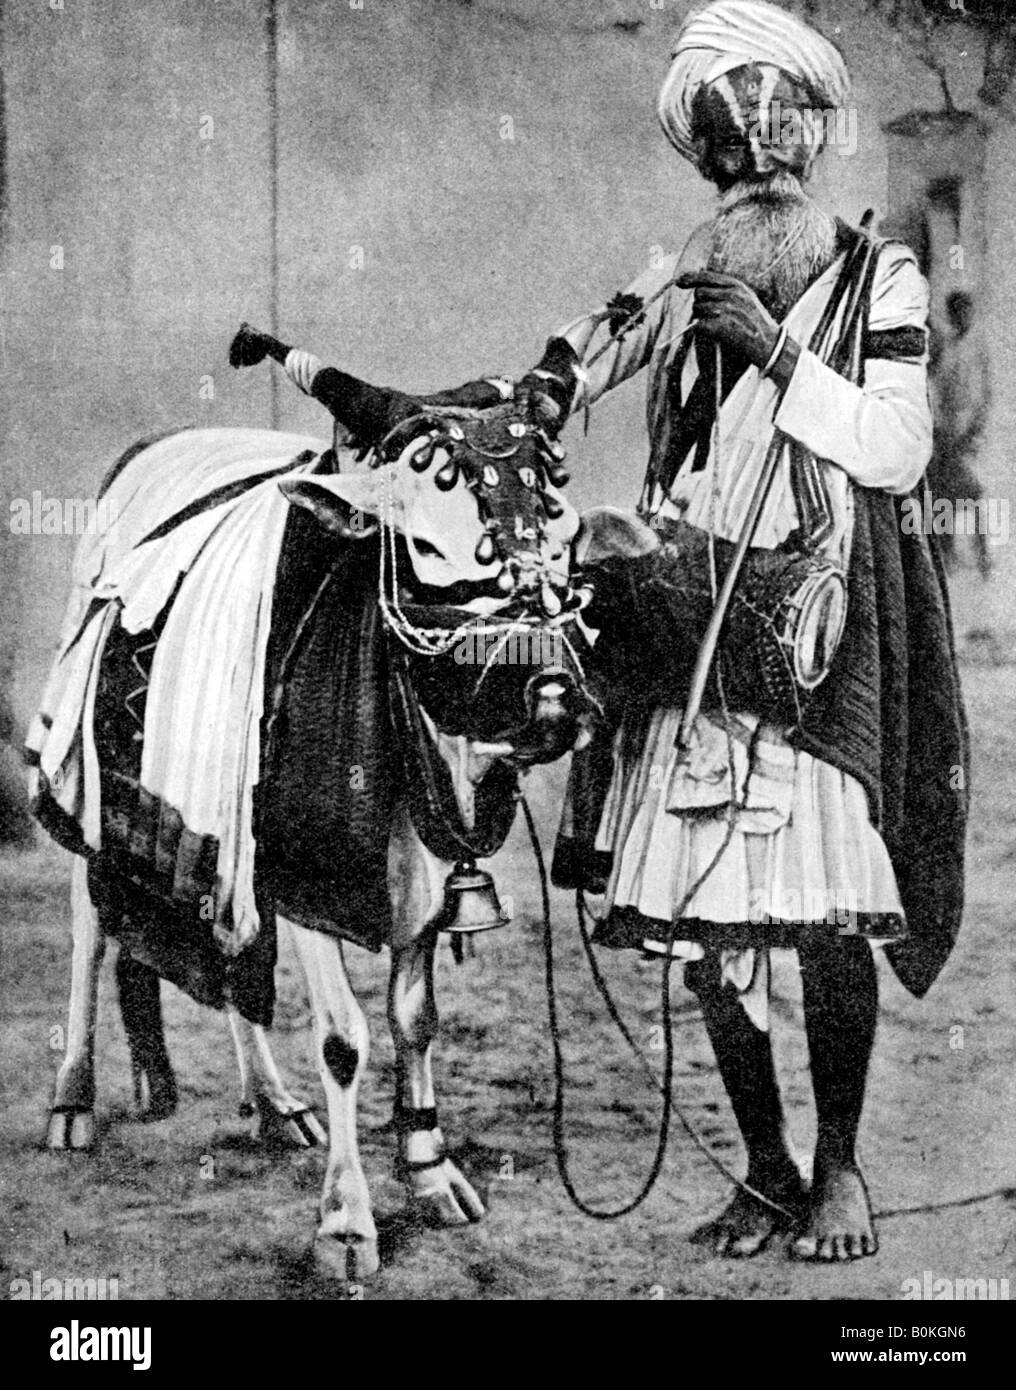 Vache sacrée vache avec hindou, l'Inde, 1936. Artiste : Inconnu Banque D'Images